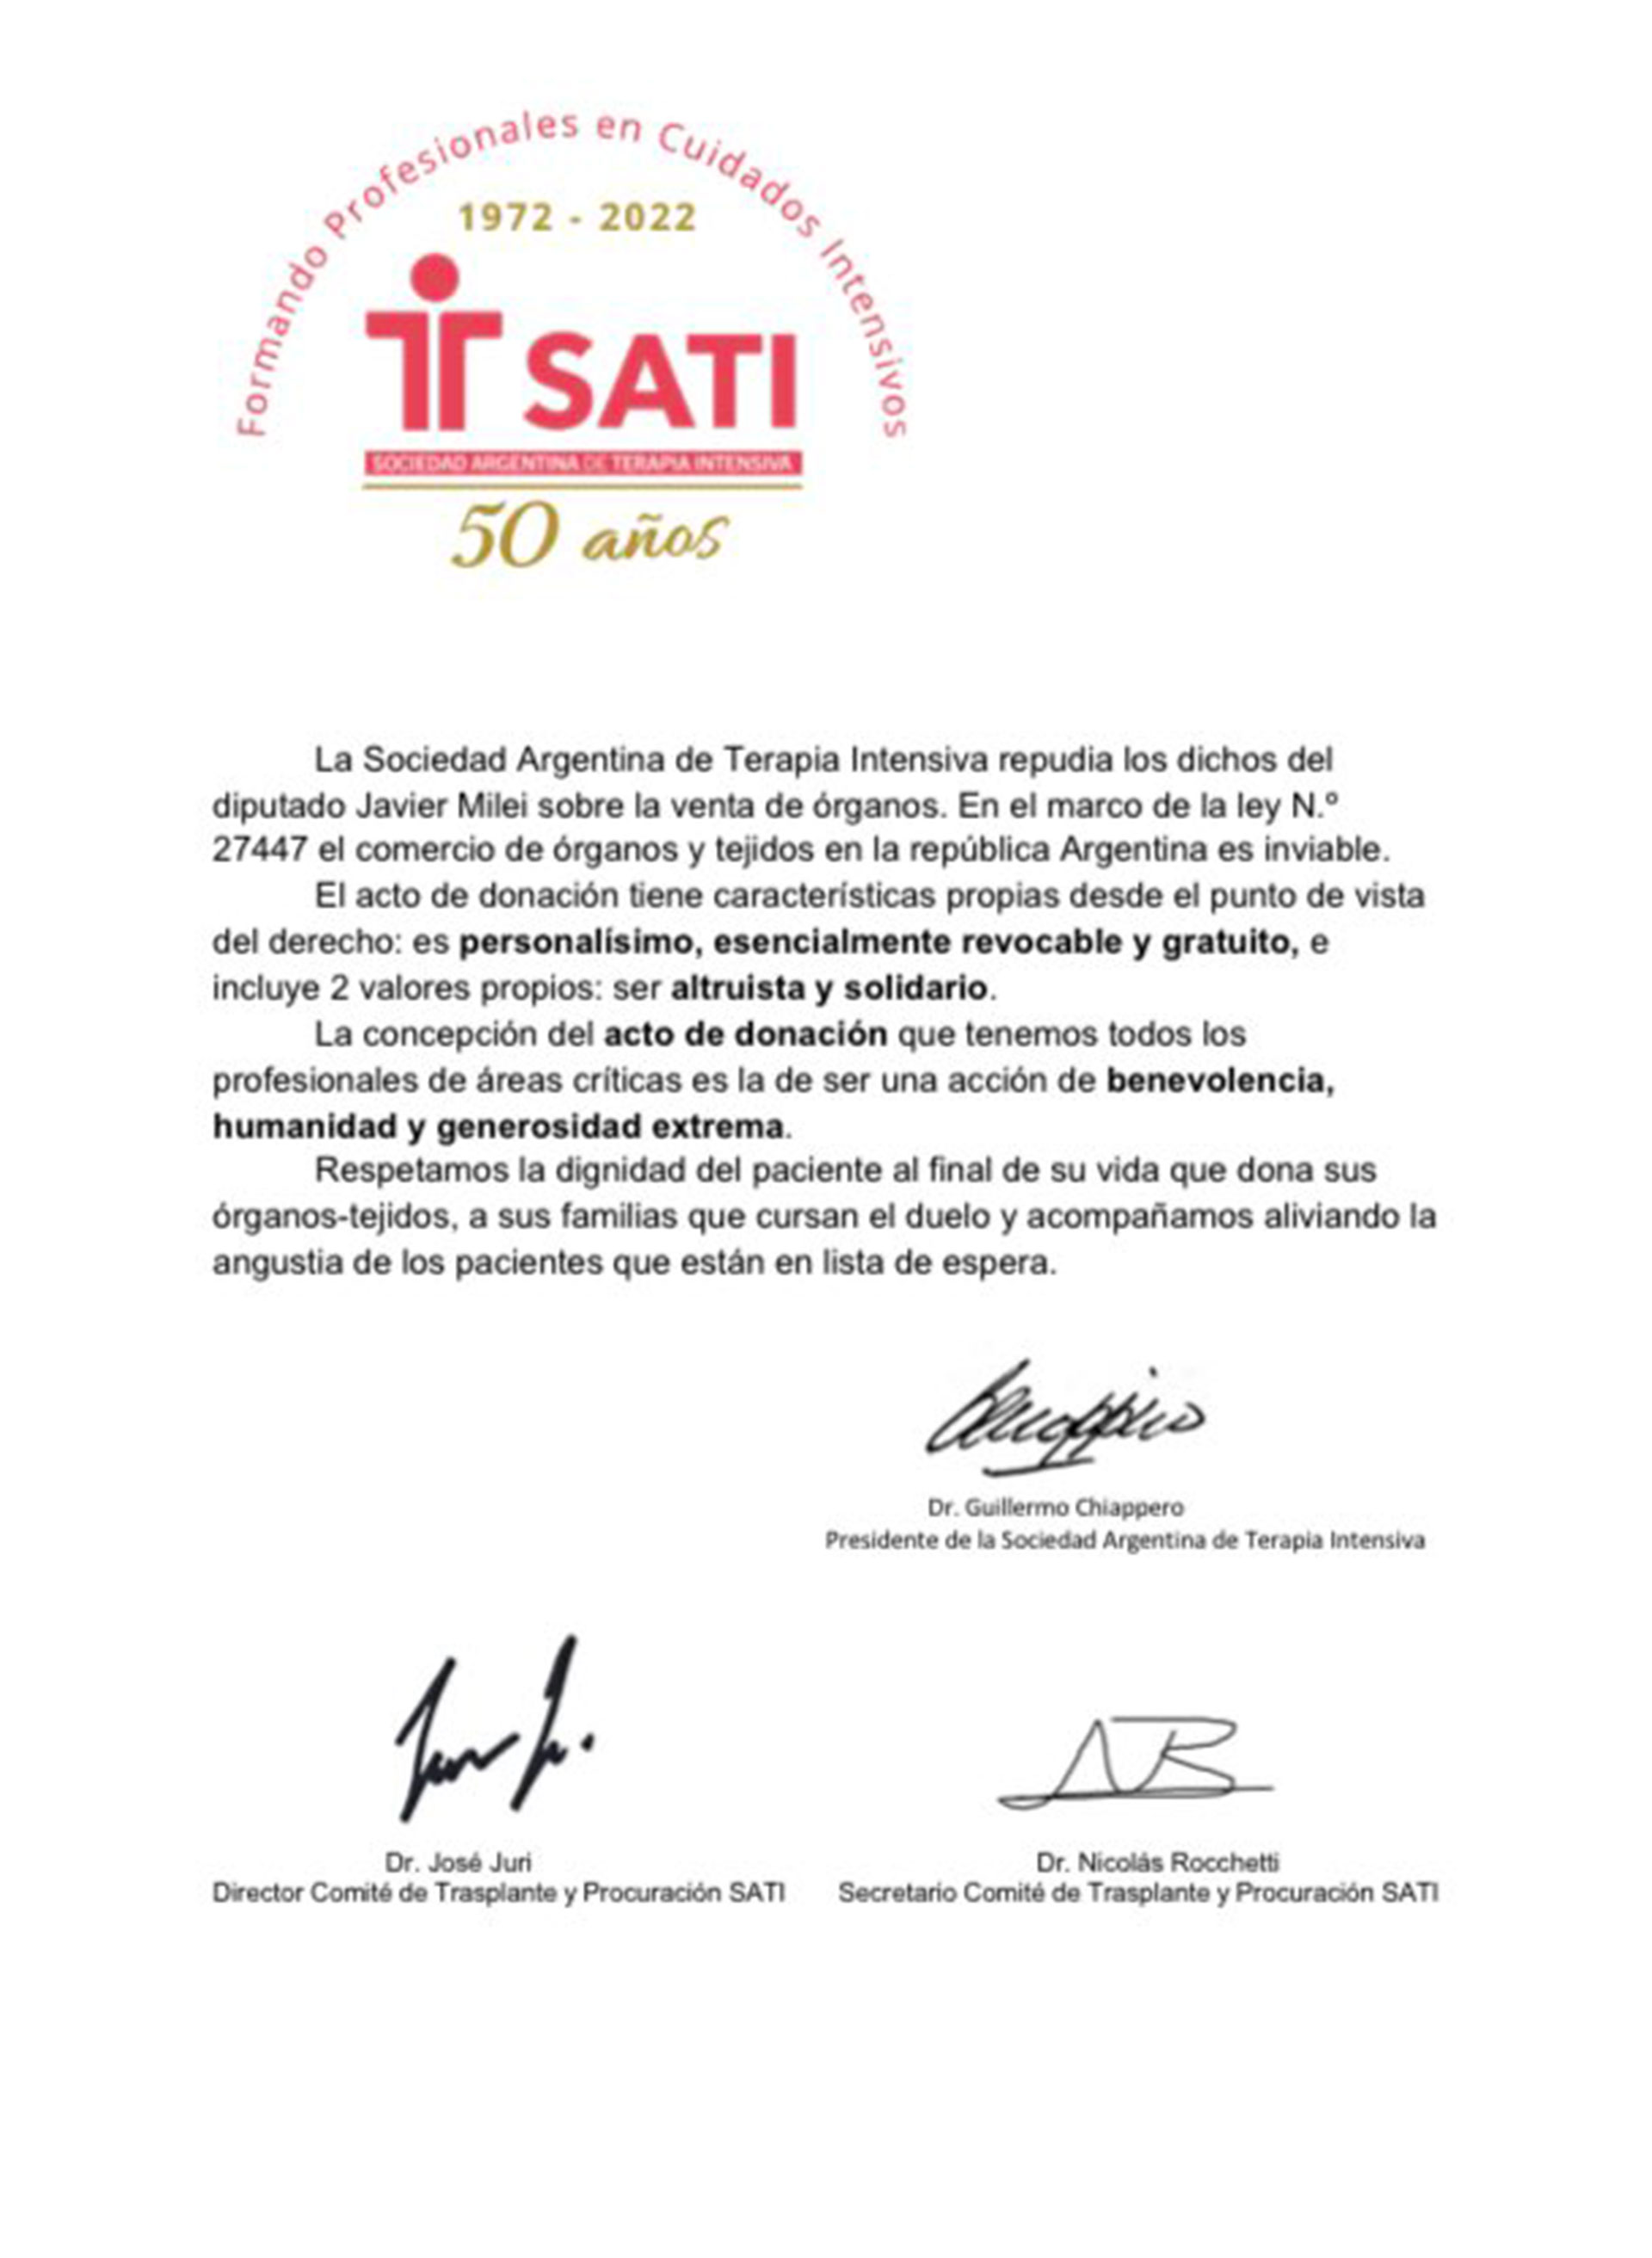 Comunicado de la Sociedad Argentina de Terapia Intensiva (SATI) en repudio al apoyo de Javier Milei a la venta de órganos en el país.